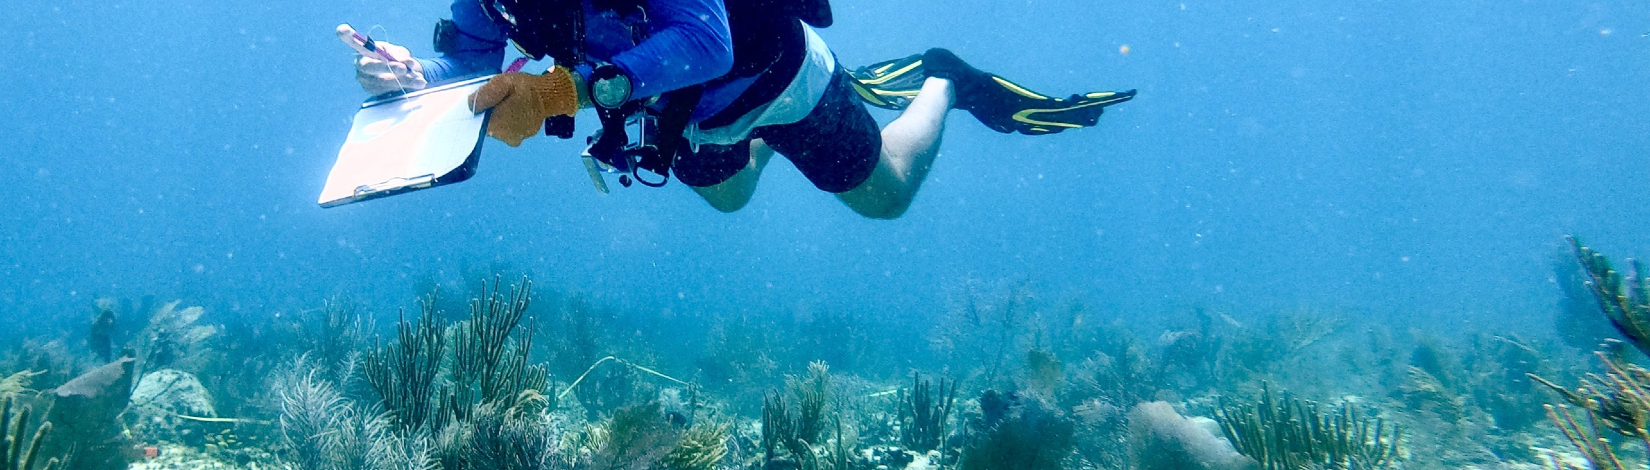 researcher SCUBA diving in waterway